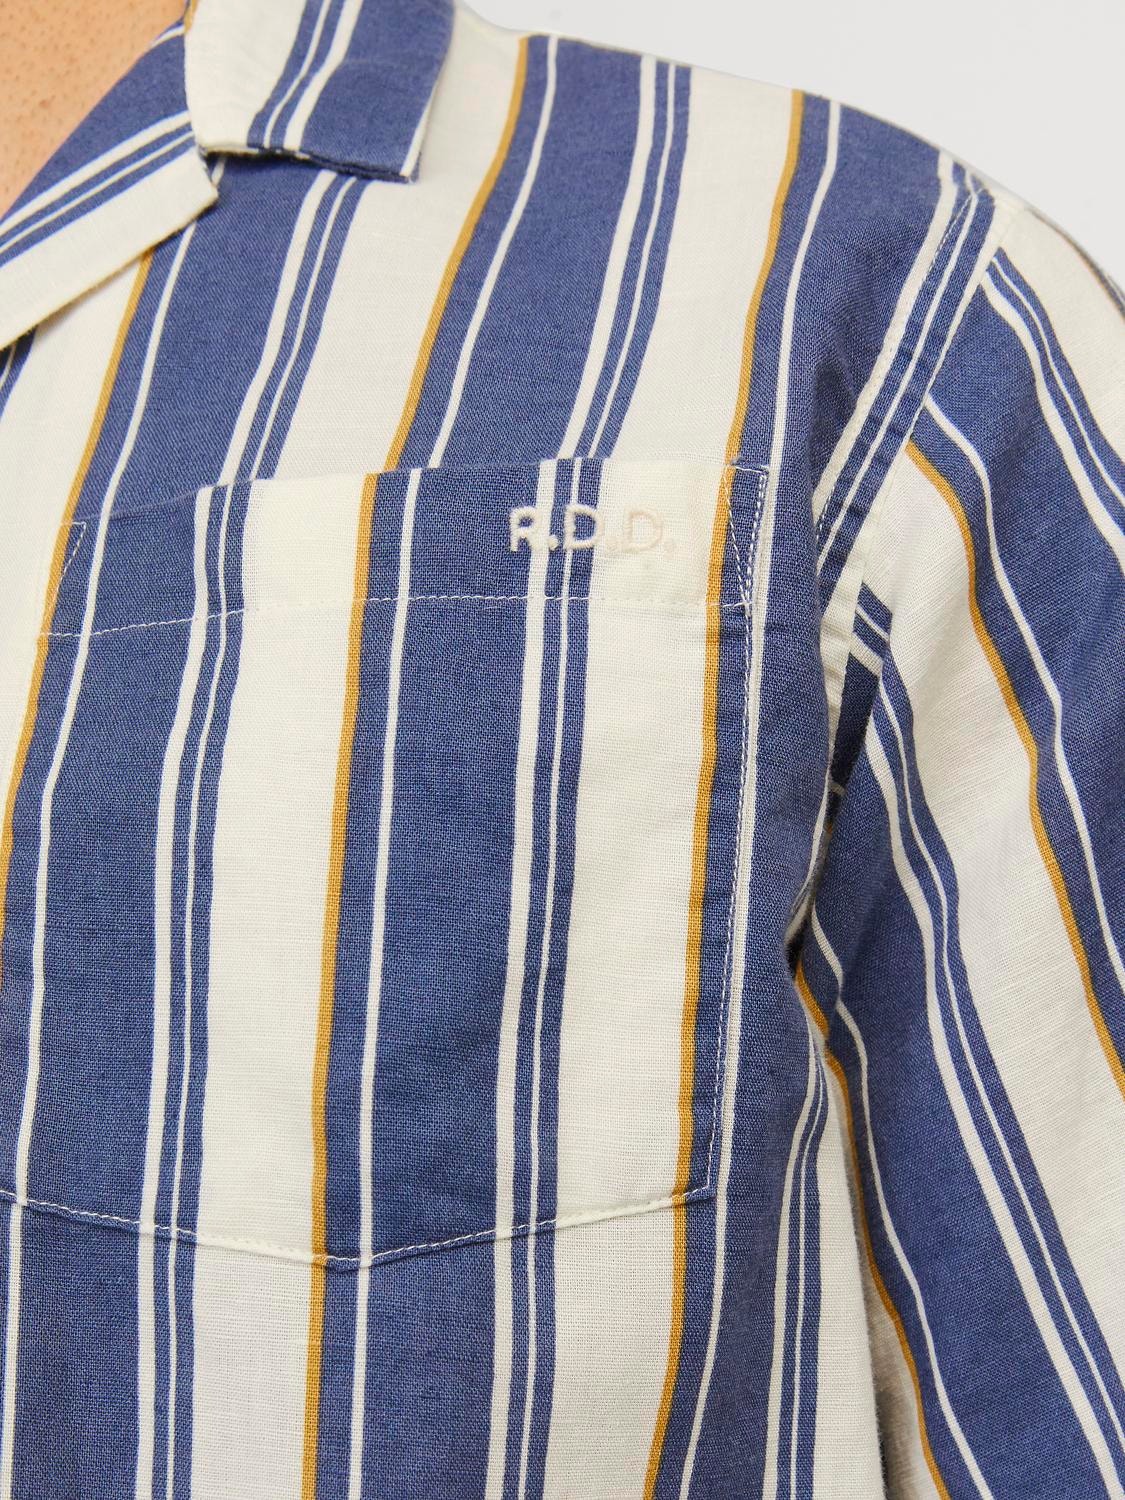 Jack & Jones RDD Relaxed Fit Resort shirt -Egret - 12254561